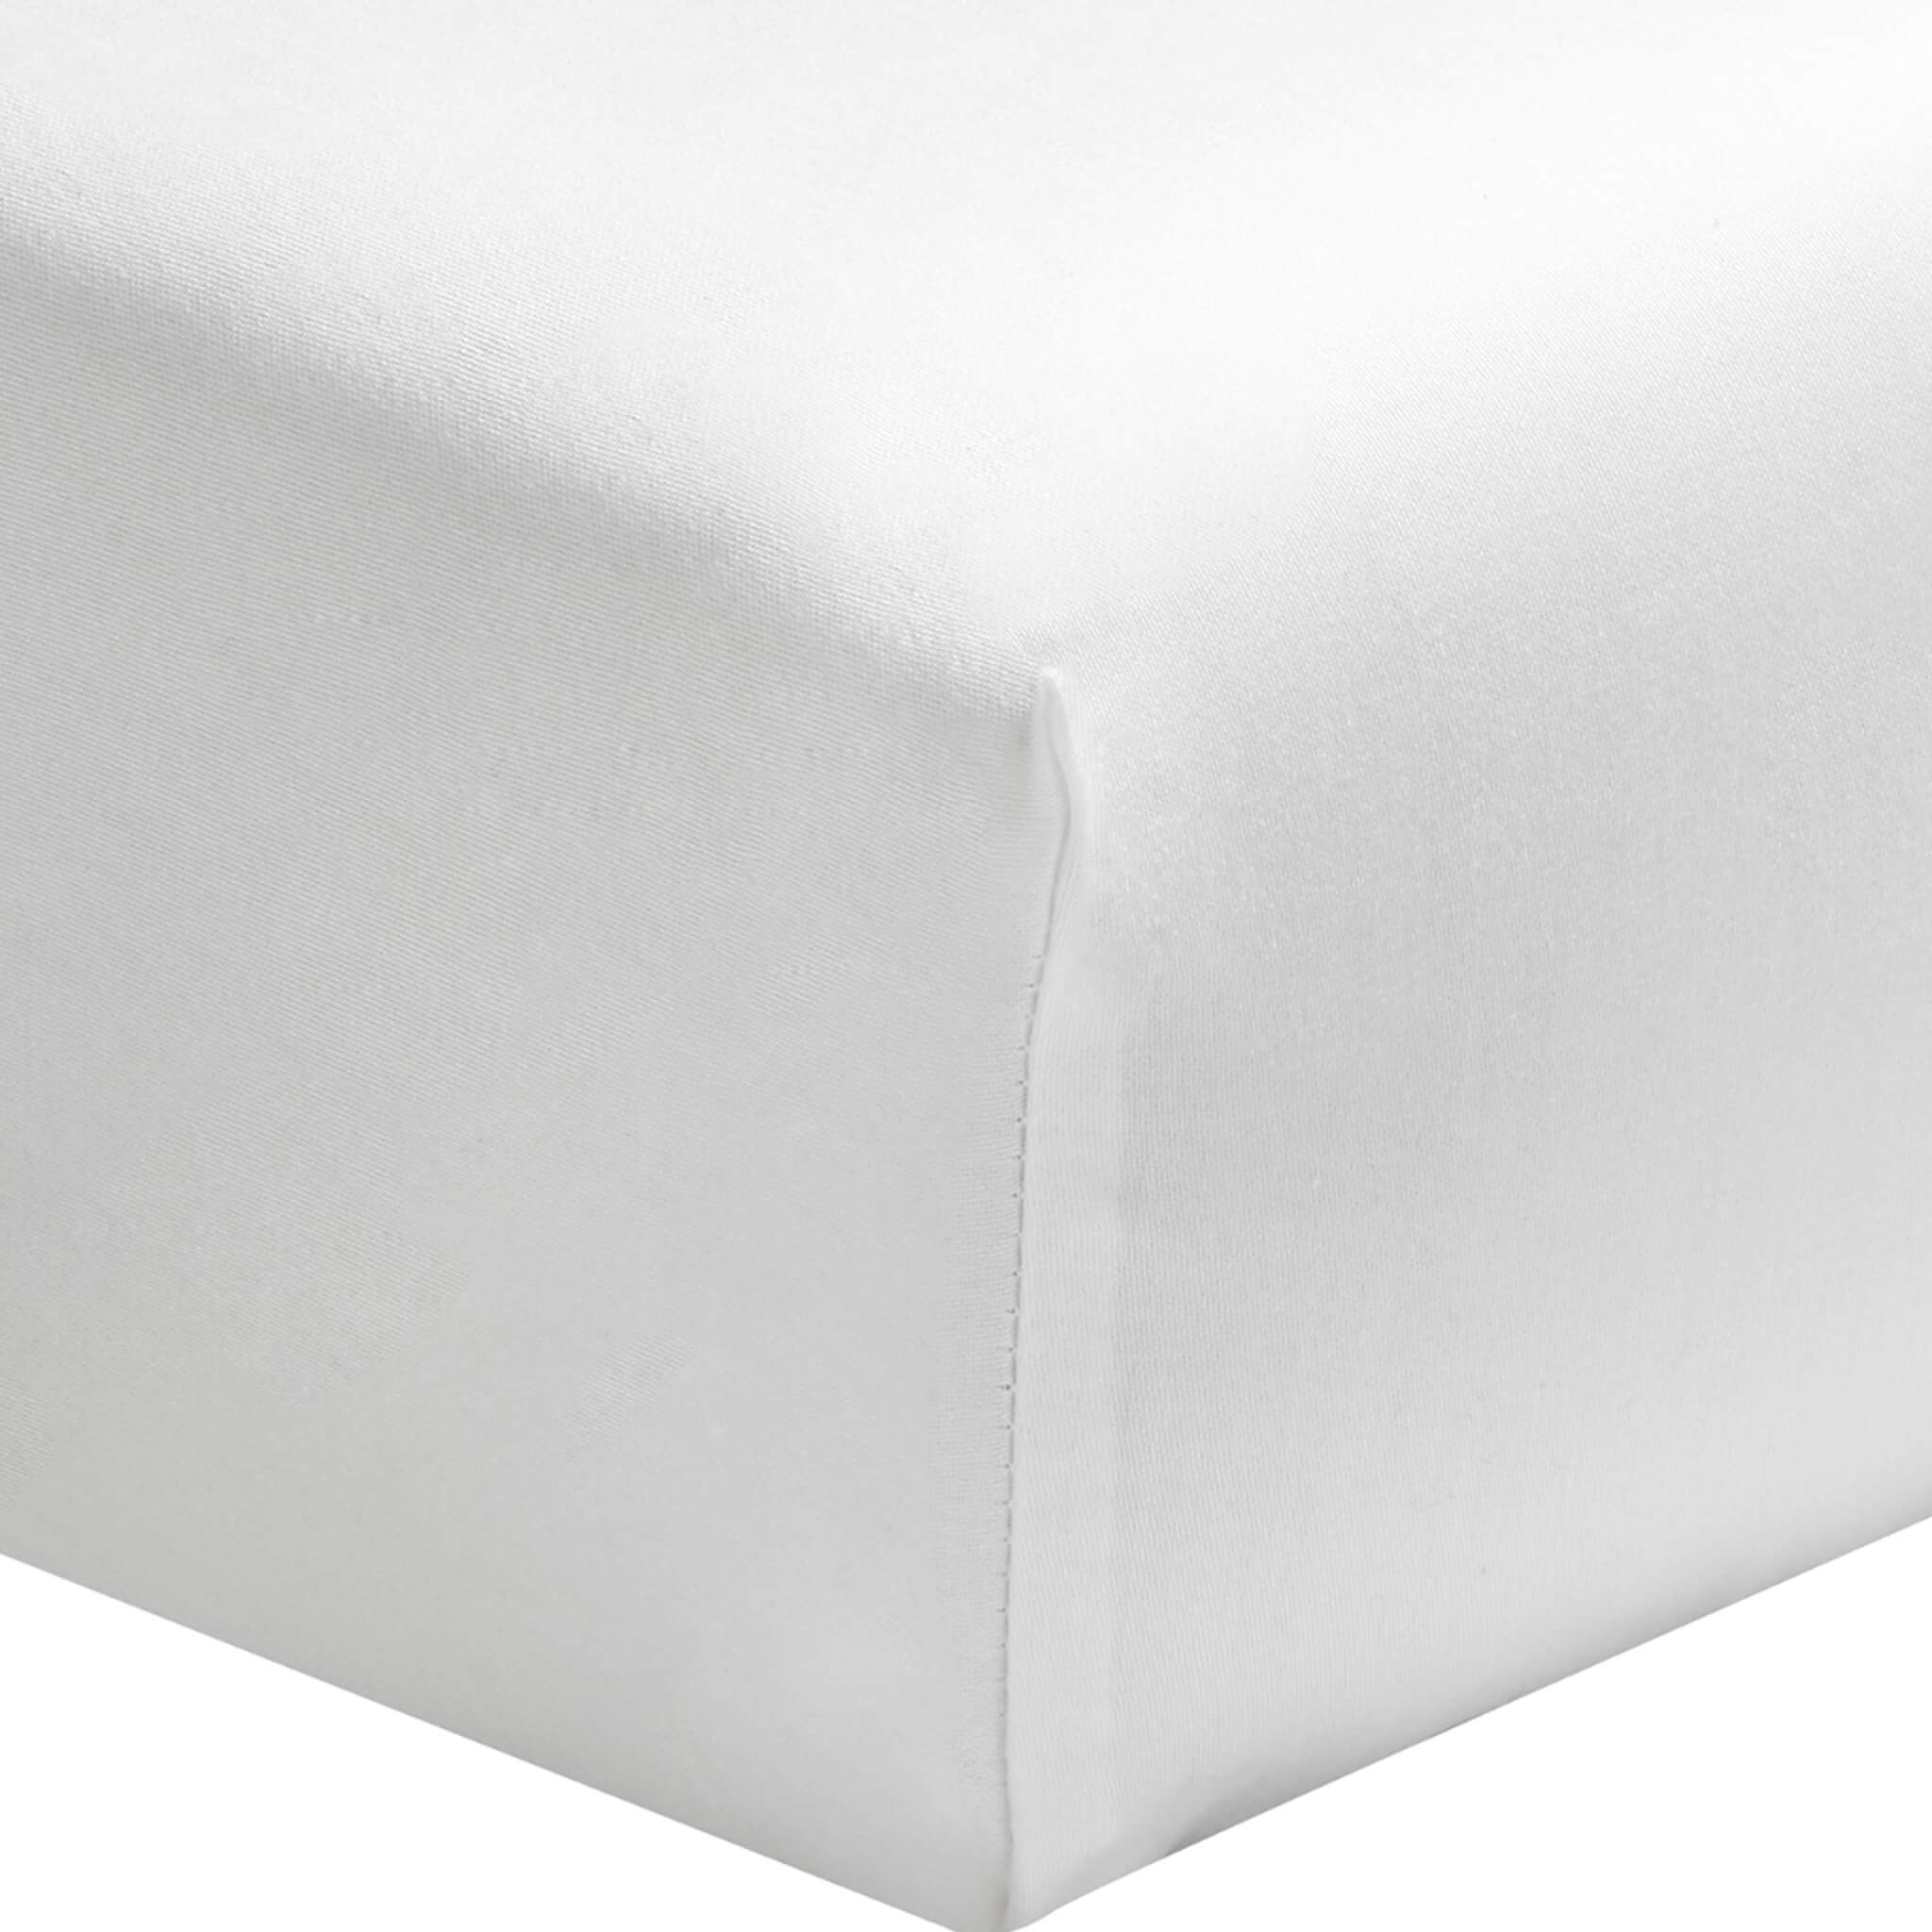 Protège-matelas en forme de drap housse coton blanc 180x200 cm SONGE